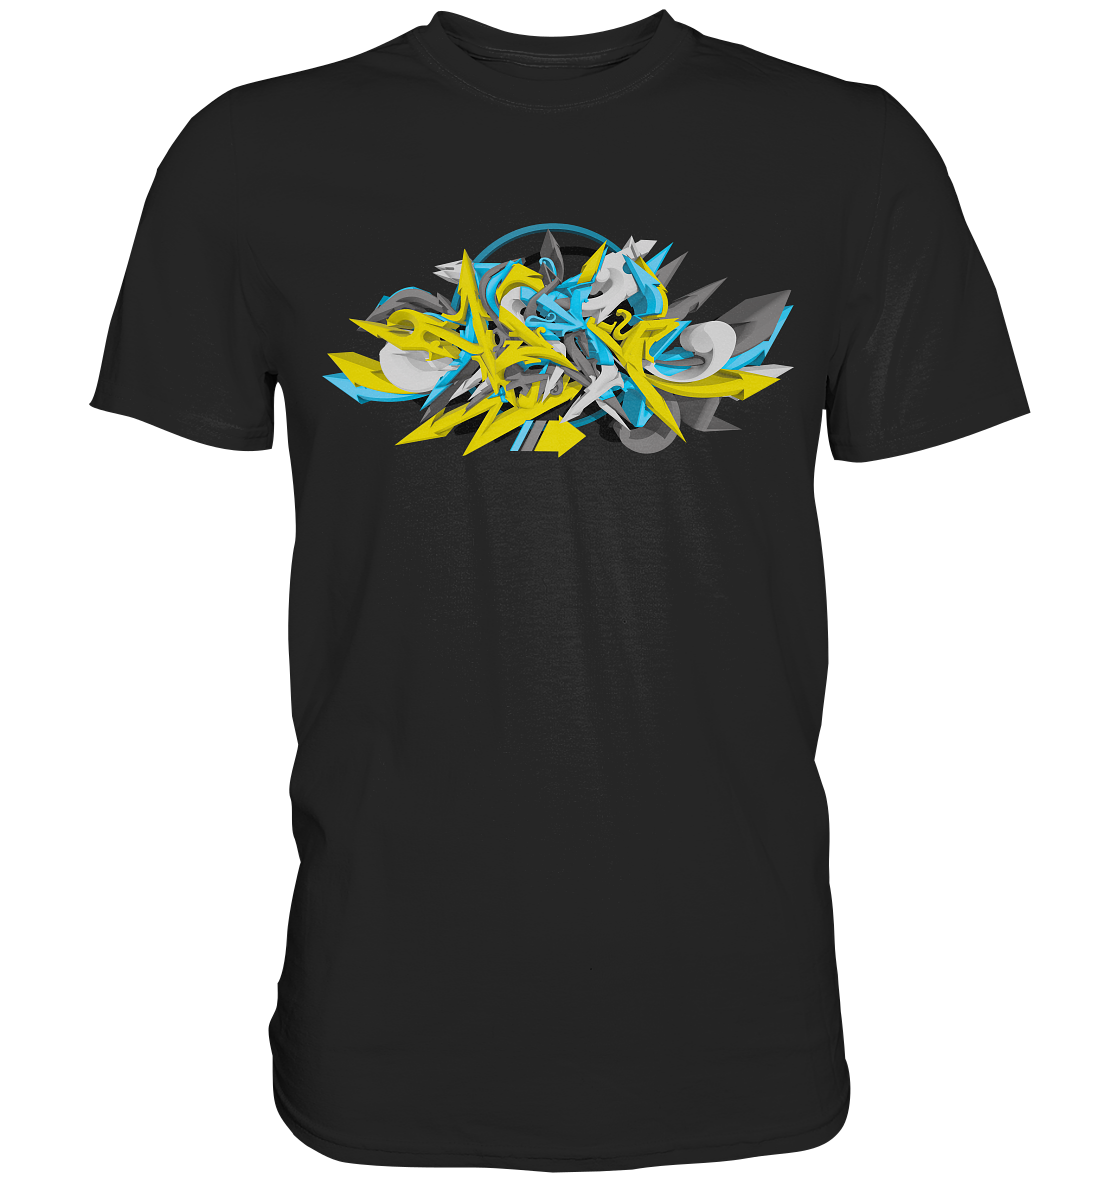 Turbo Blue Yellow Graffiti Art - Premium Shirt